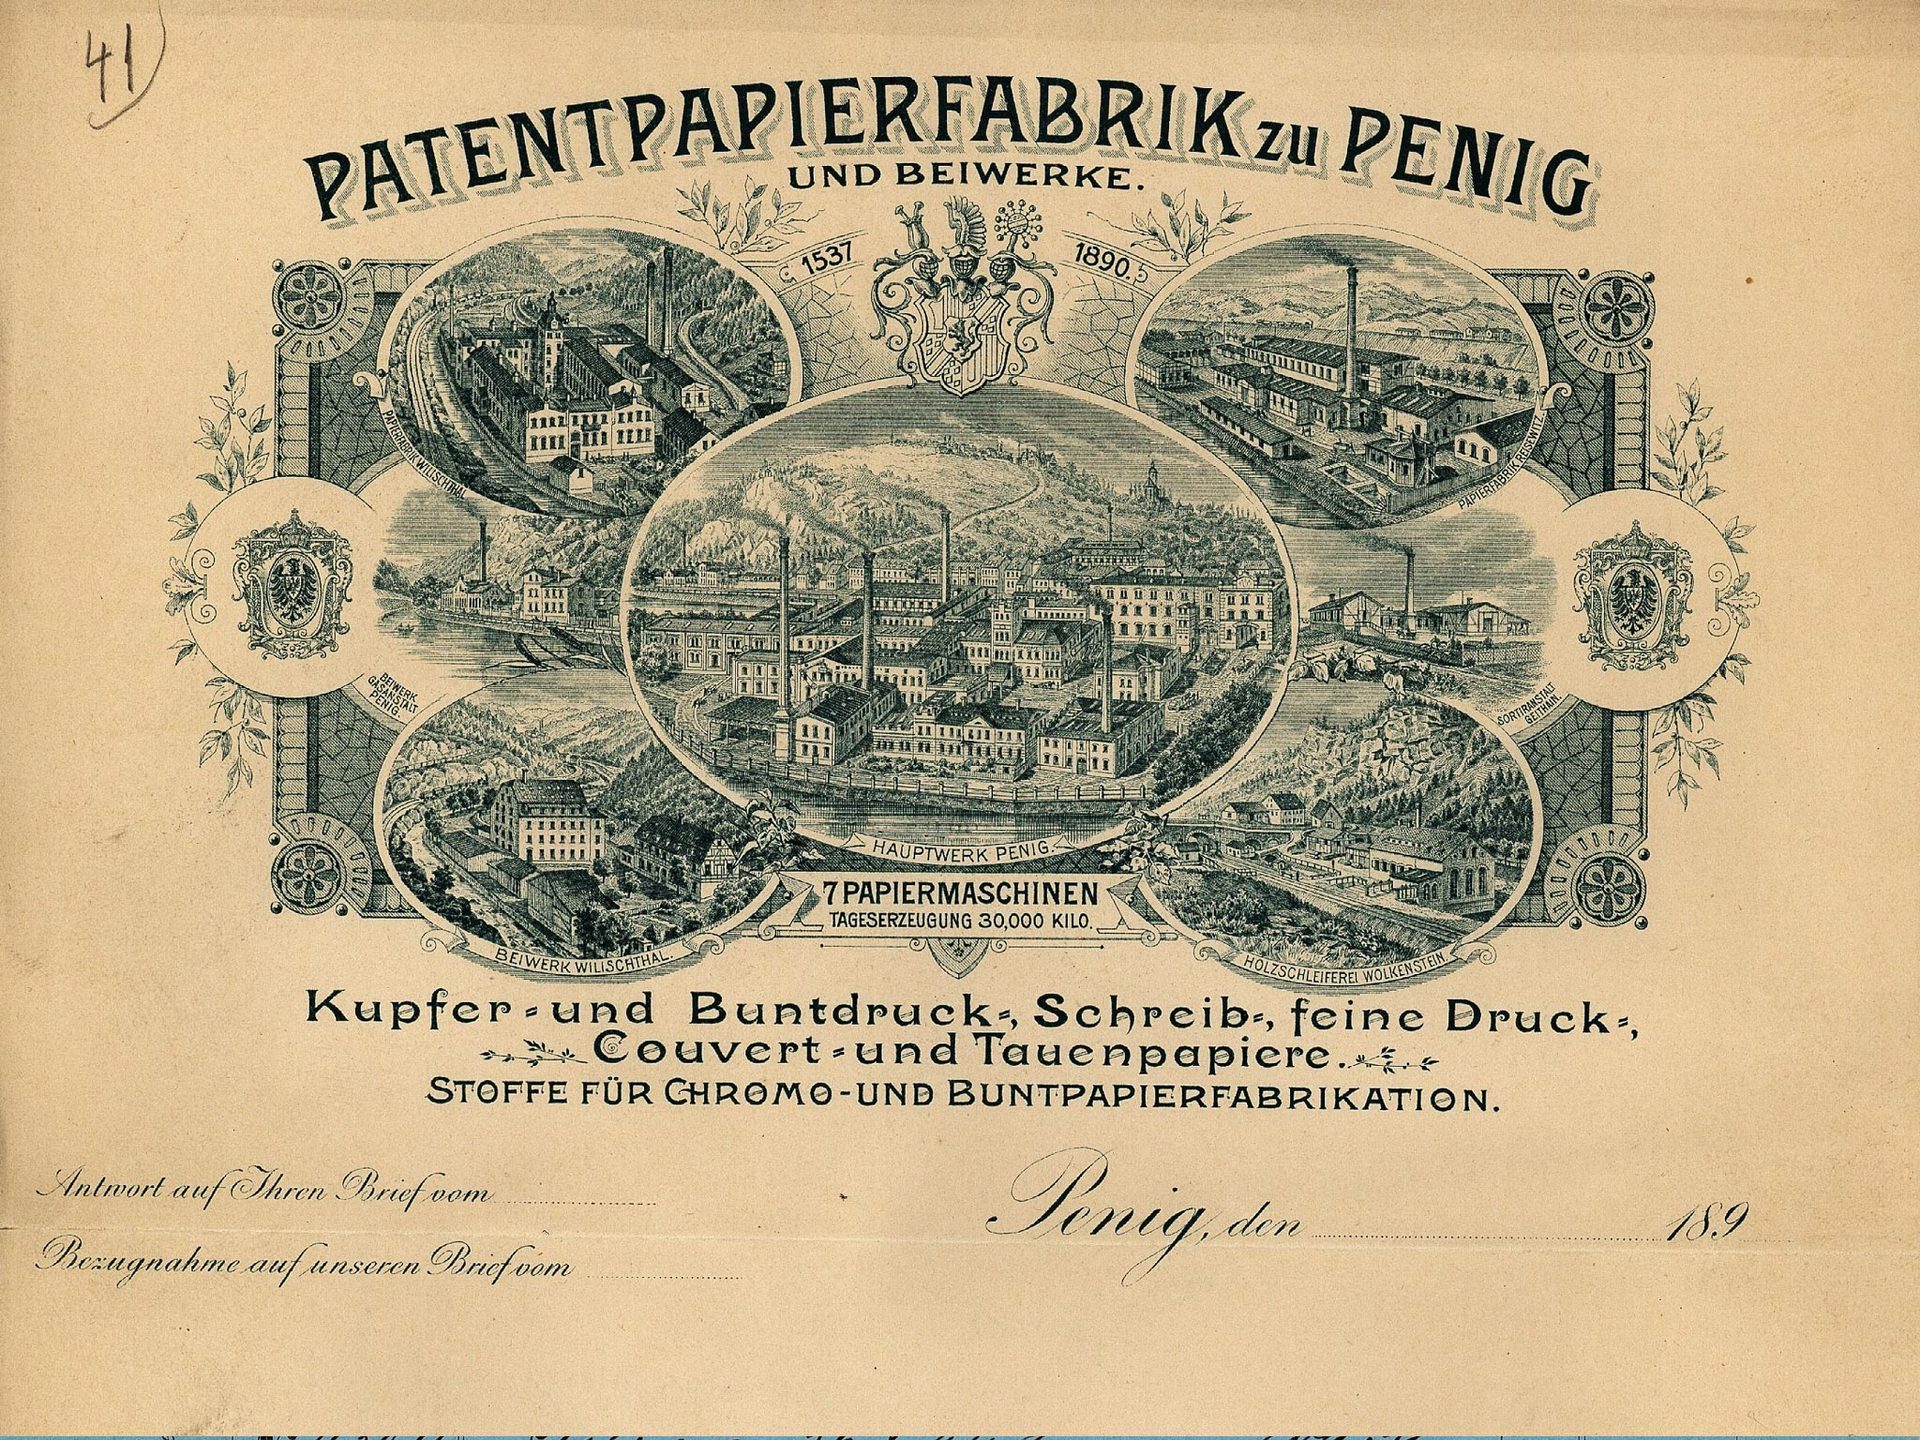 Kopfbogen der Patentpapierfabrik zu Penig